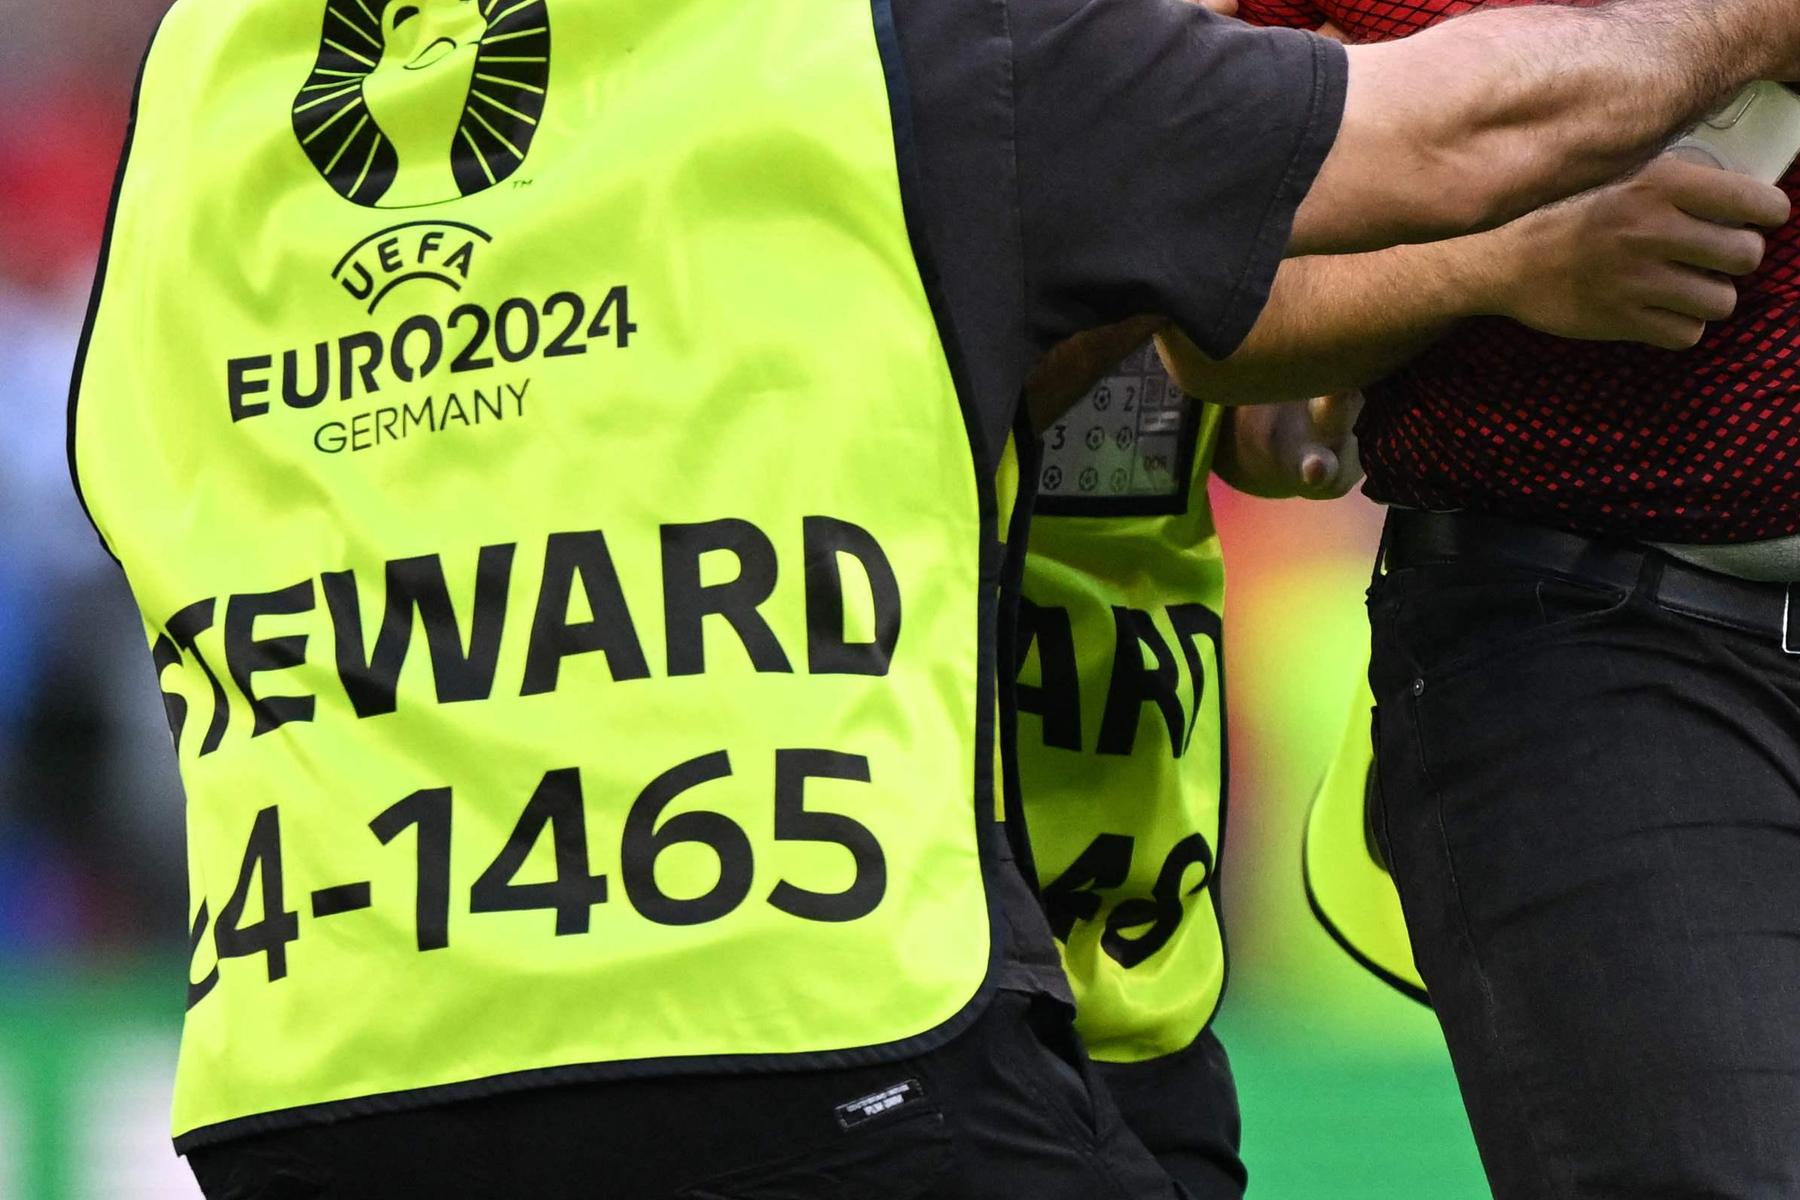 UEFA Euro 2024: Video zeigt gewalttätige Ordner: Polizei ermittelt